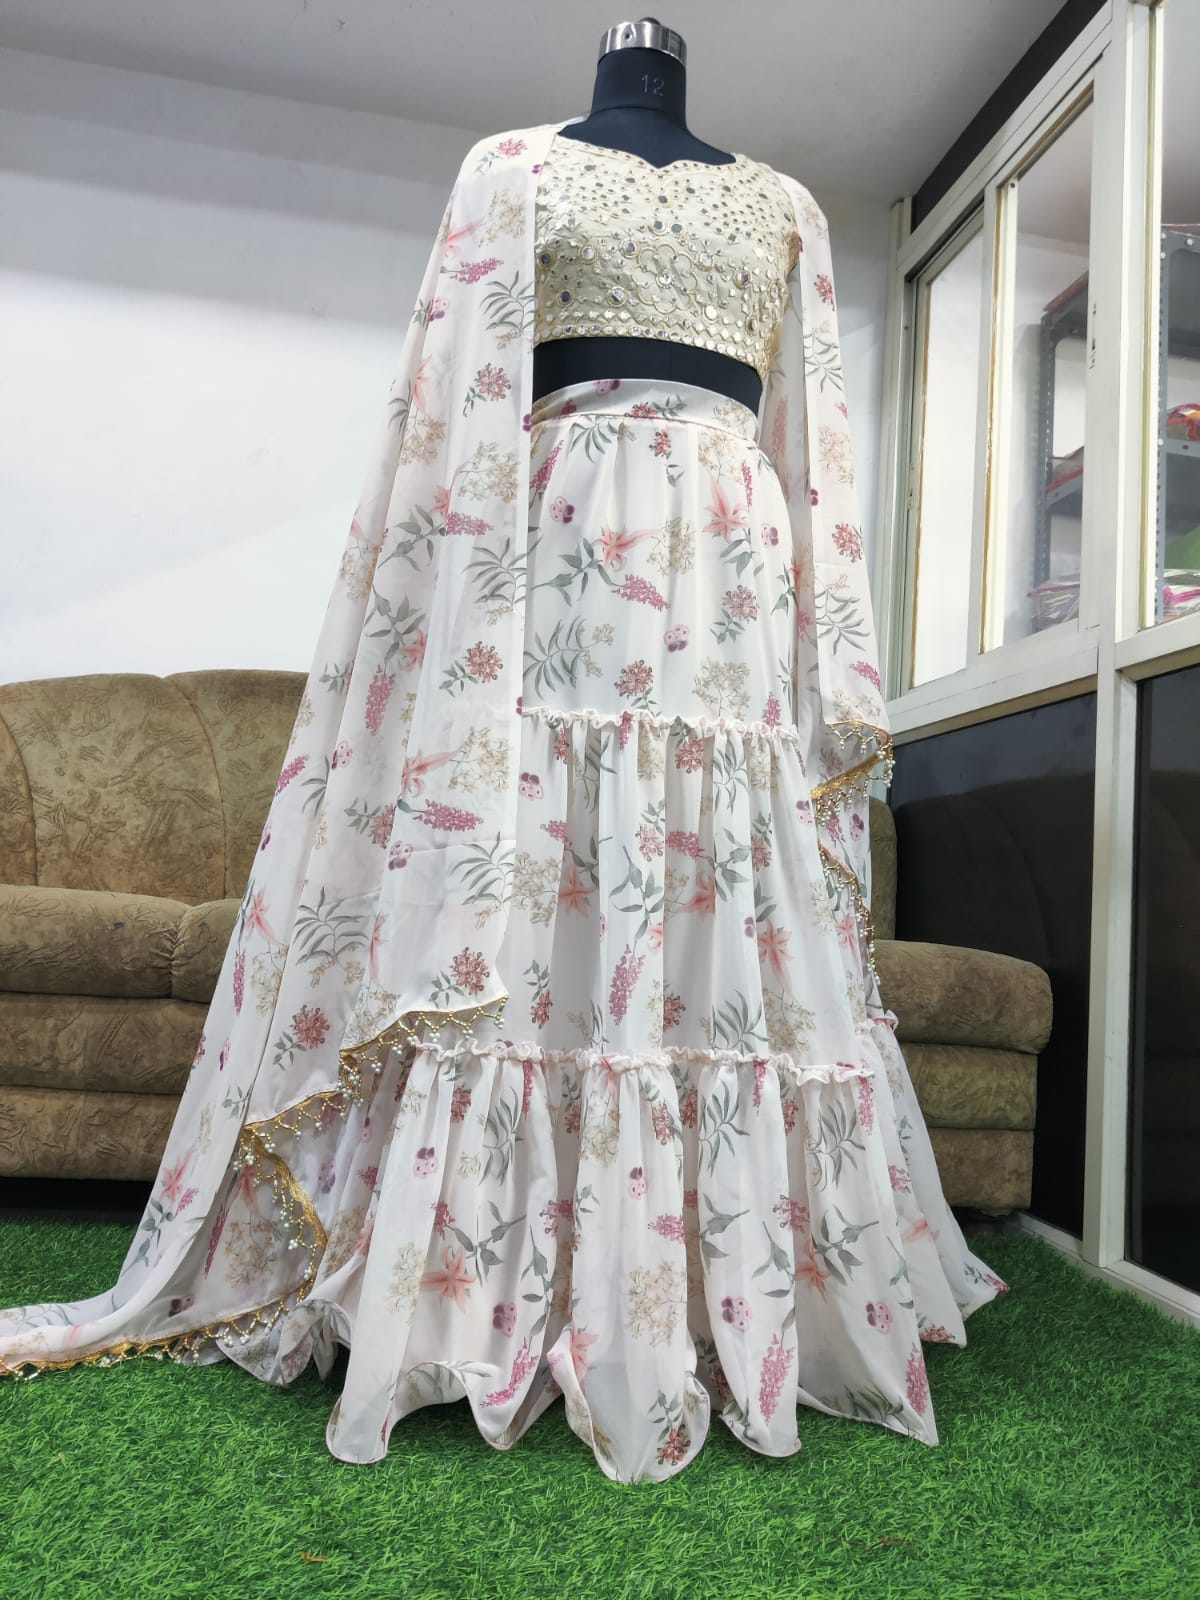 Sabyasachi Lehenga Choli Indian Wedding Dress Bollywood Lehenga Designer  Lehenga | eBay